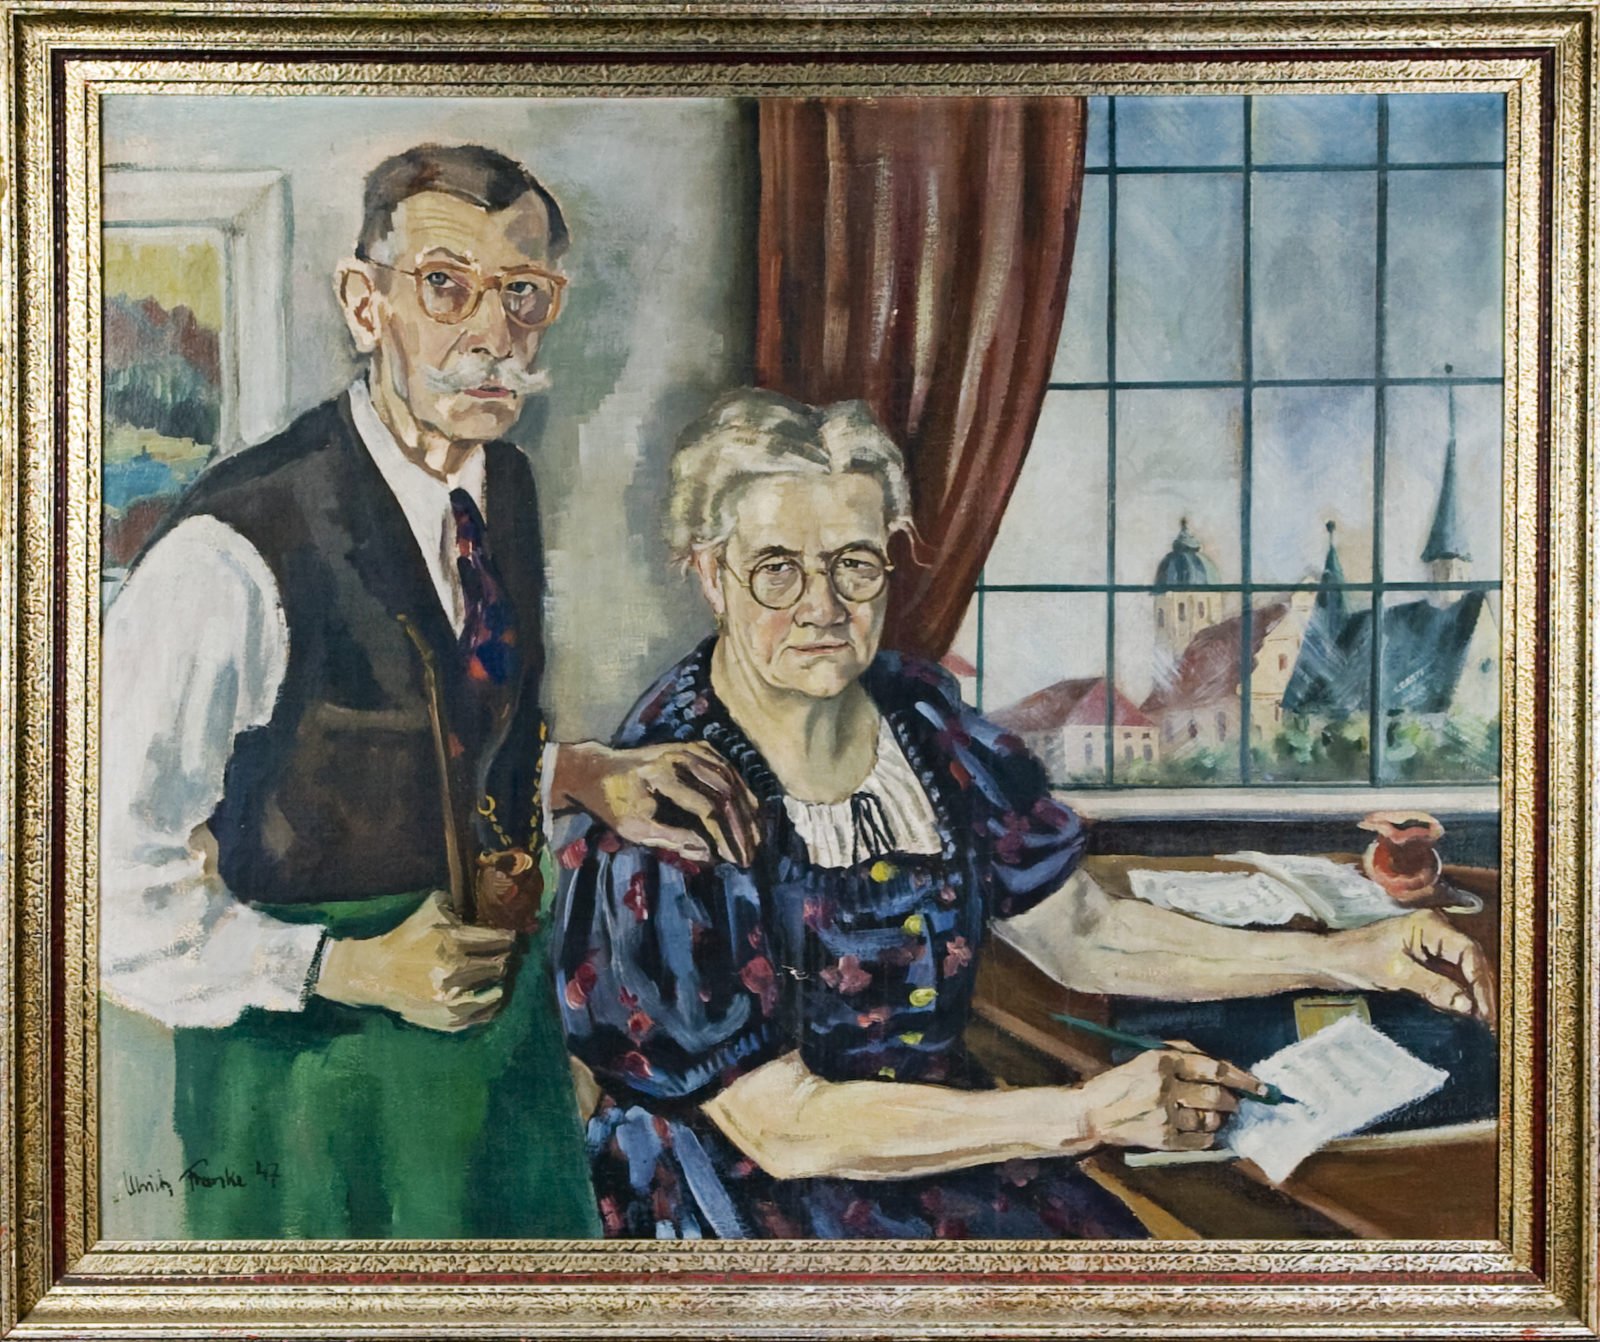 Der Glaser- und Zinngießer-Meister Franz Xaver Kraus und seine Gattin und Geschäftsfrau Veronika in einem Ölgemälde, das im Hintergrund den Wallfahrtsort Alötting zeigt.